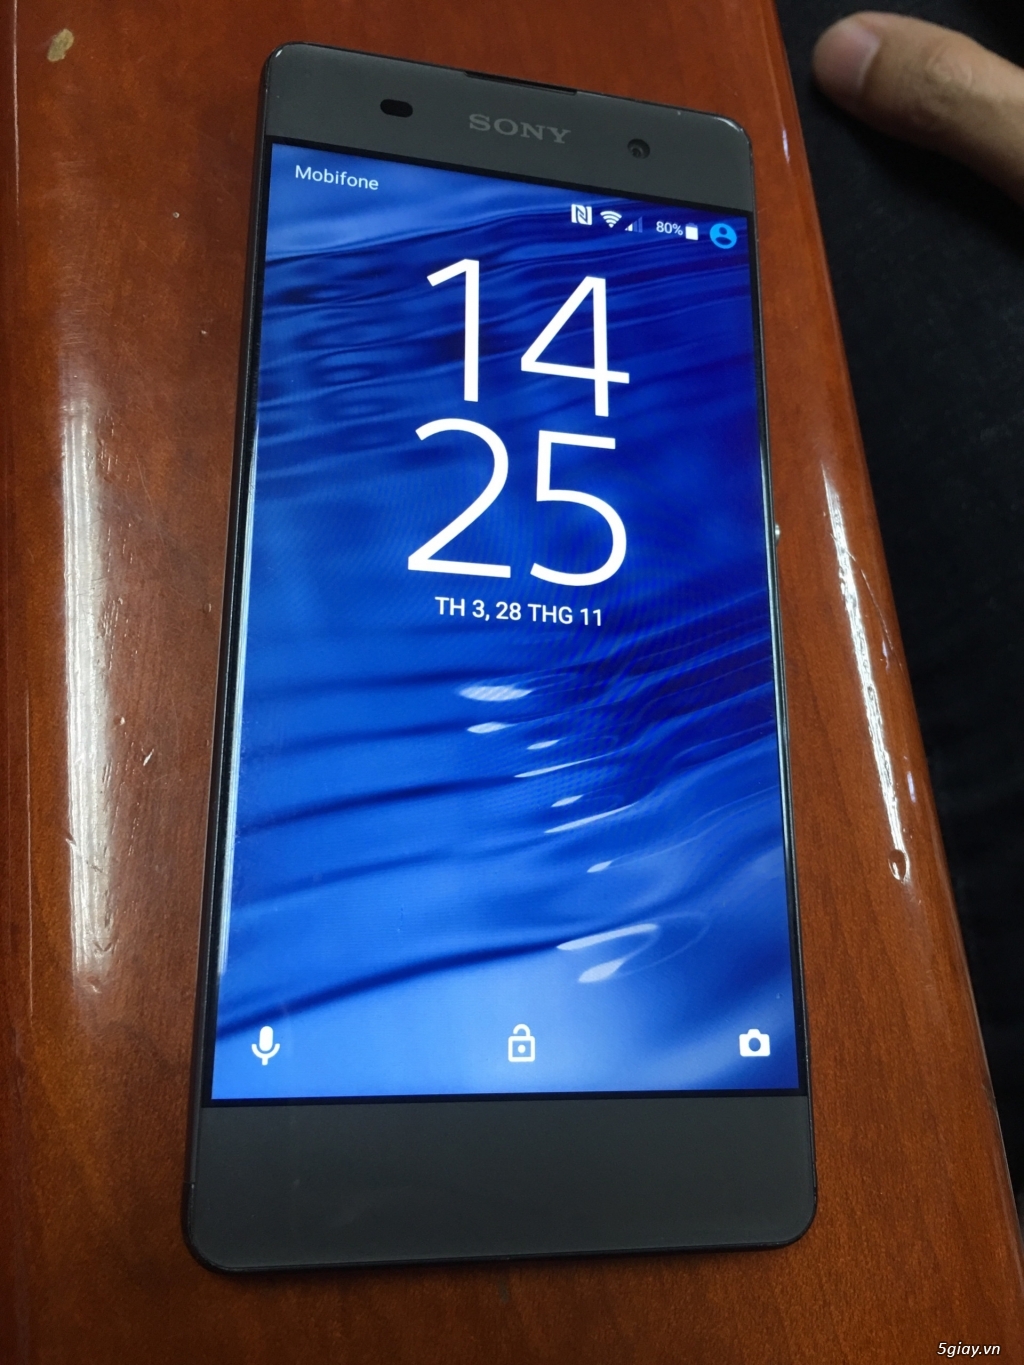 Bán điện thoại Sony XA còn bảo hành đến T6/2018 - 4